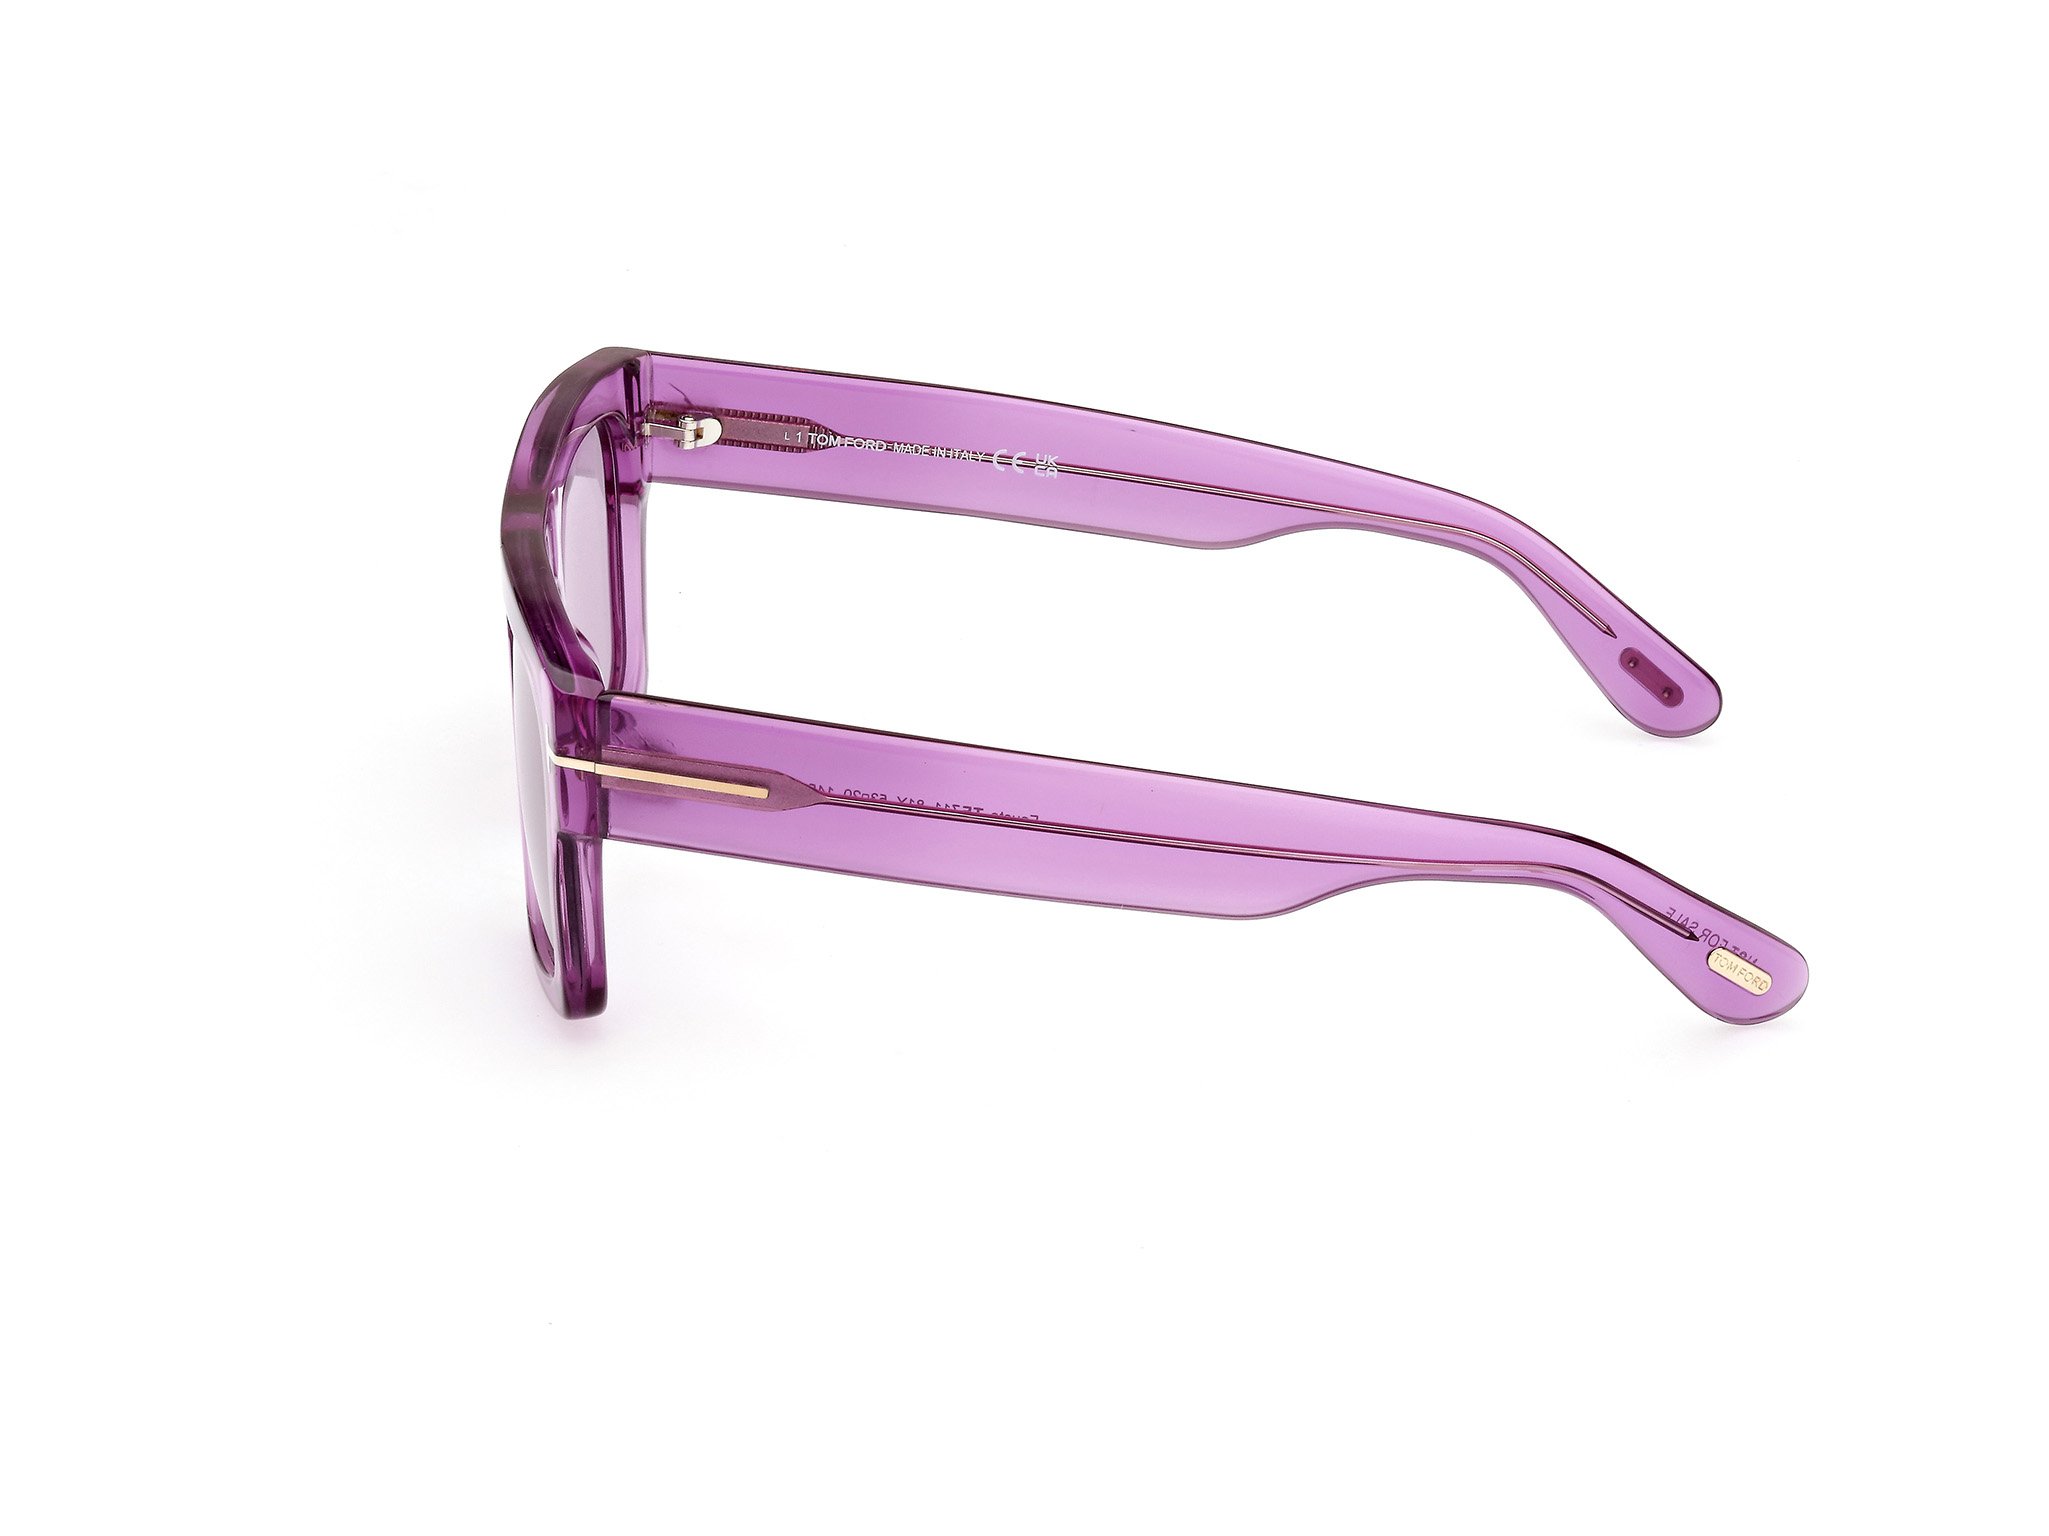 Das Bild zeigt die Sonnenbrille FT0711 81Y von der Marke Tom Ford in lila.